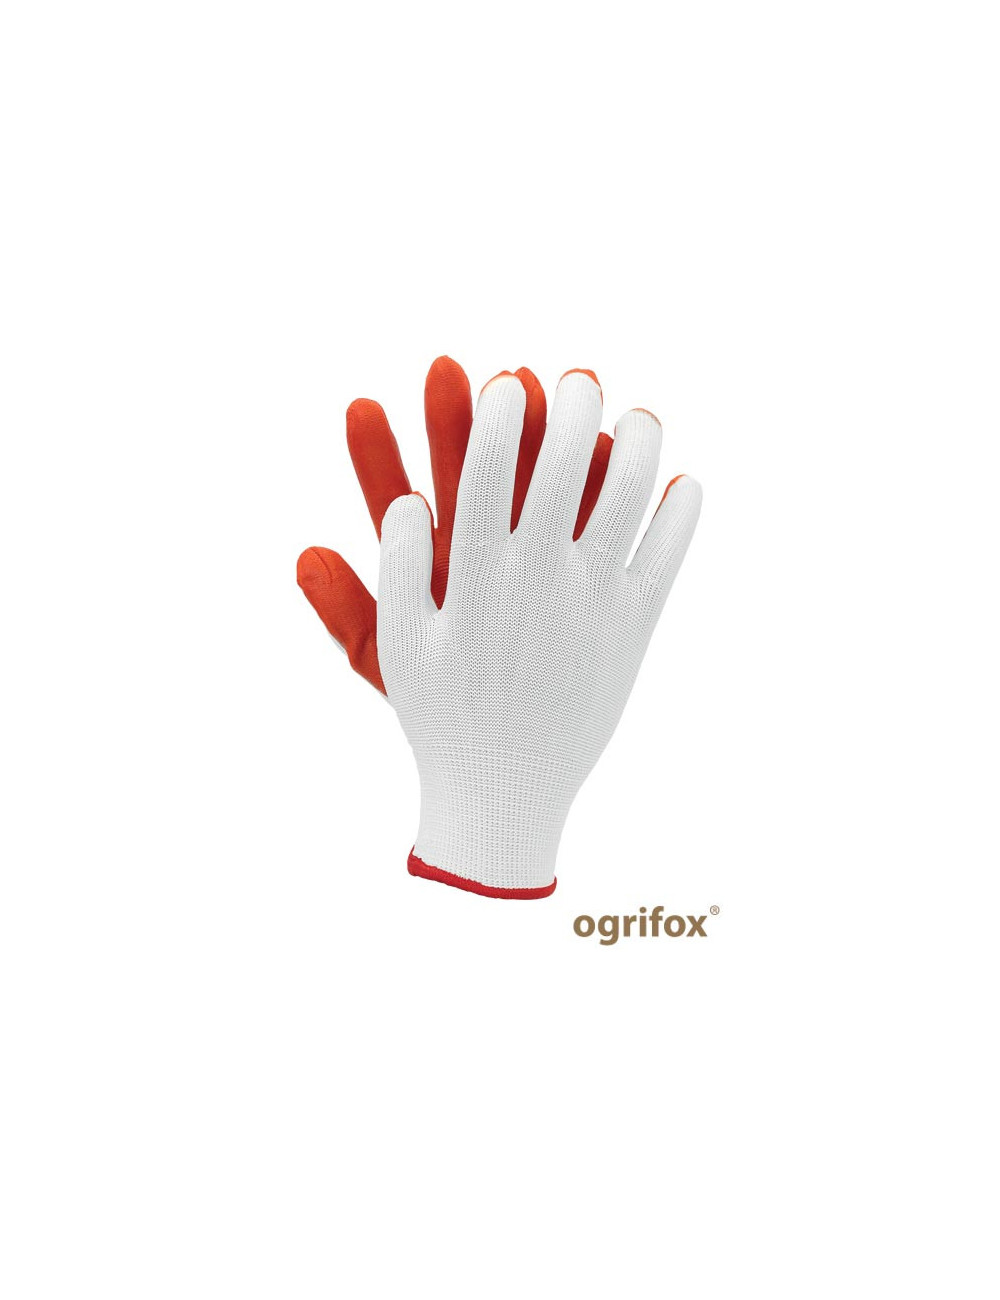 Working gloves ox.11.386 latua ox-latua wp white-orange Ogrifox